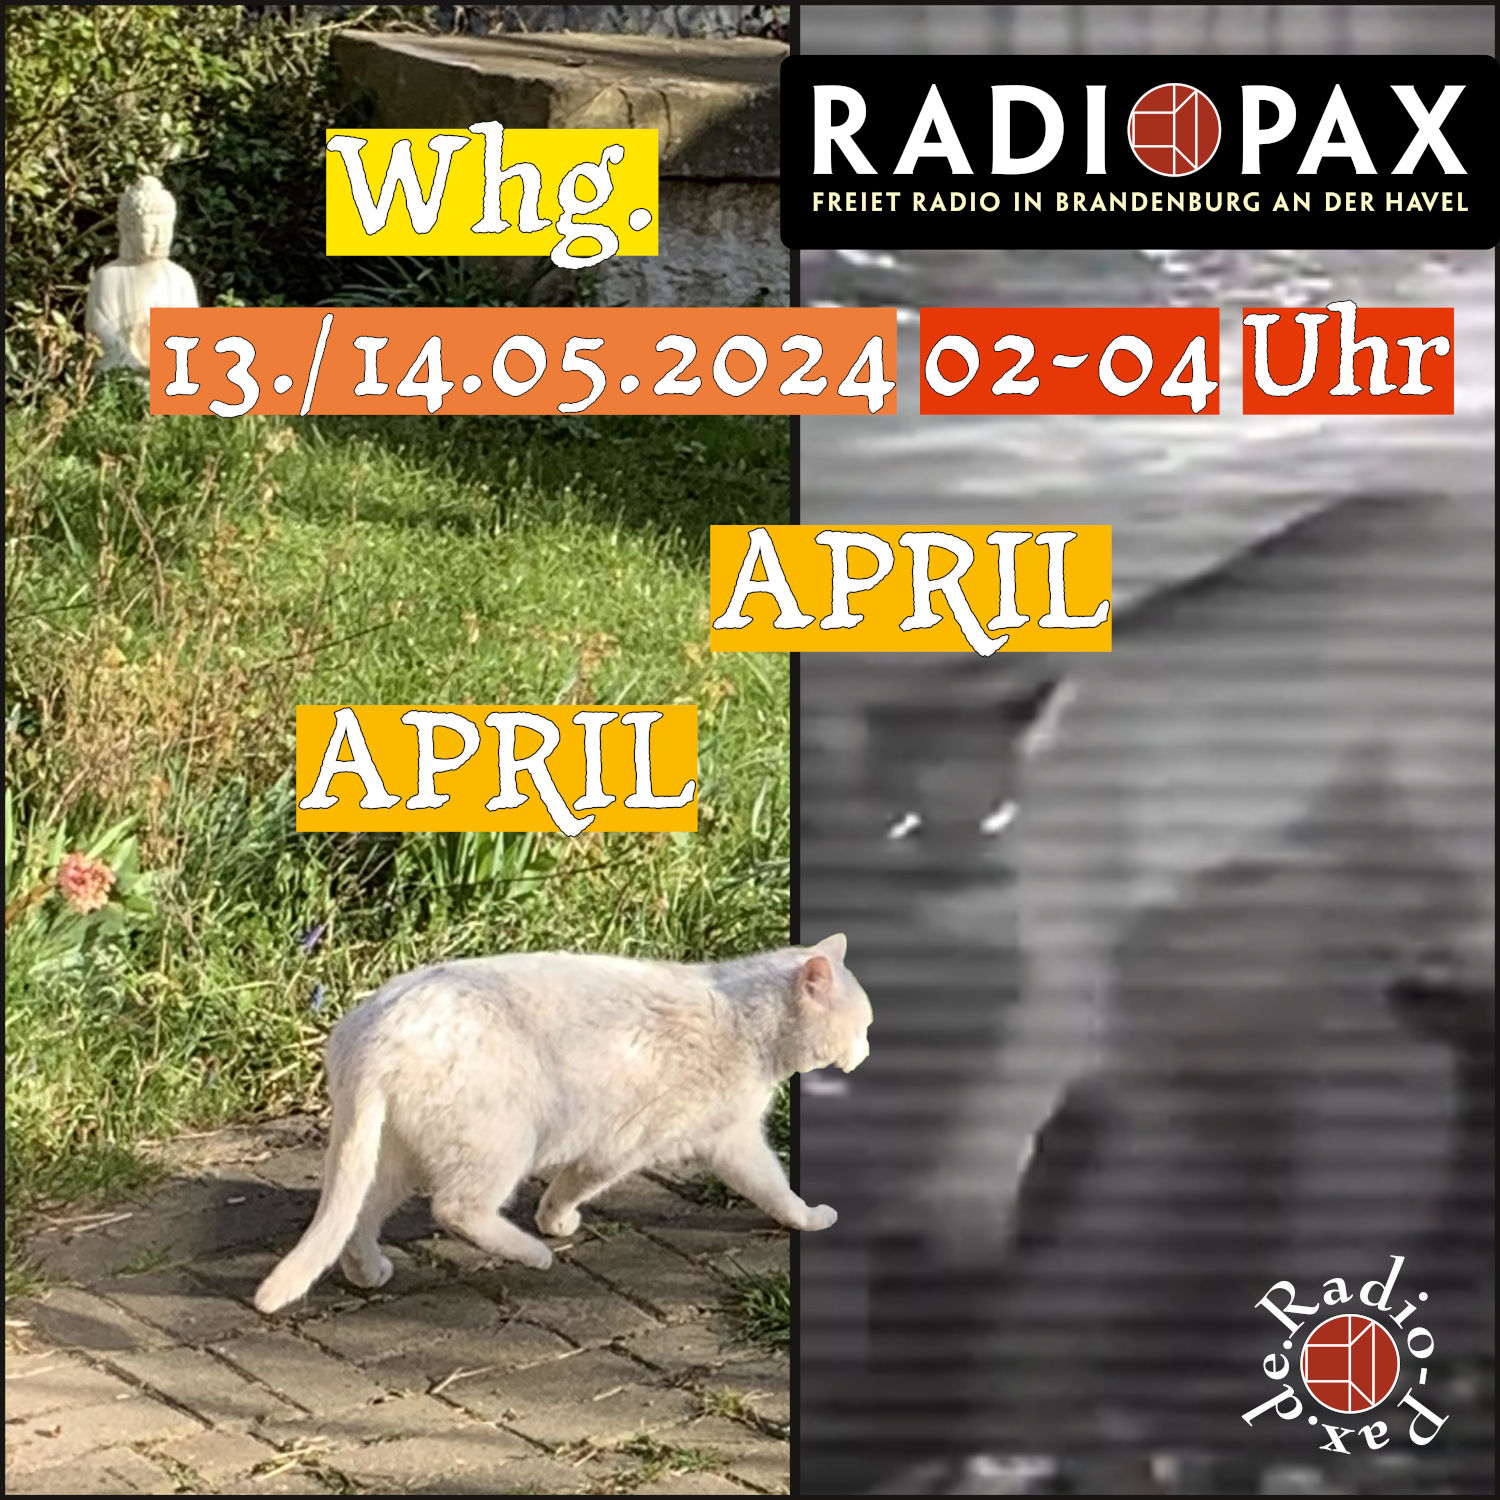 RADIO PAX (Whg. der Aprilsendung) am 14.05. von 2-4 Uhr